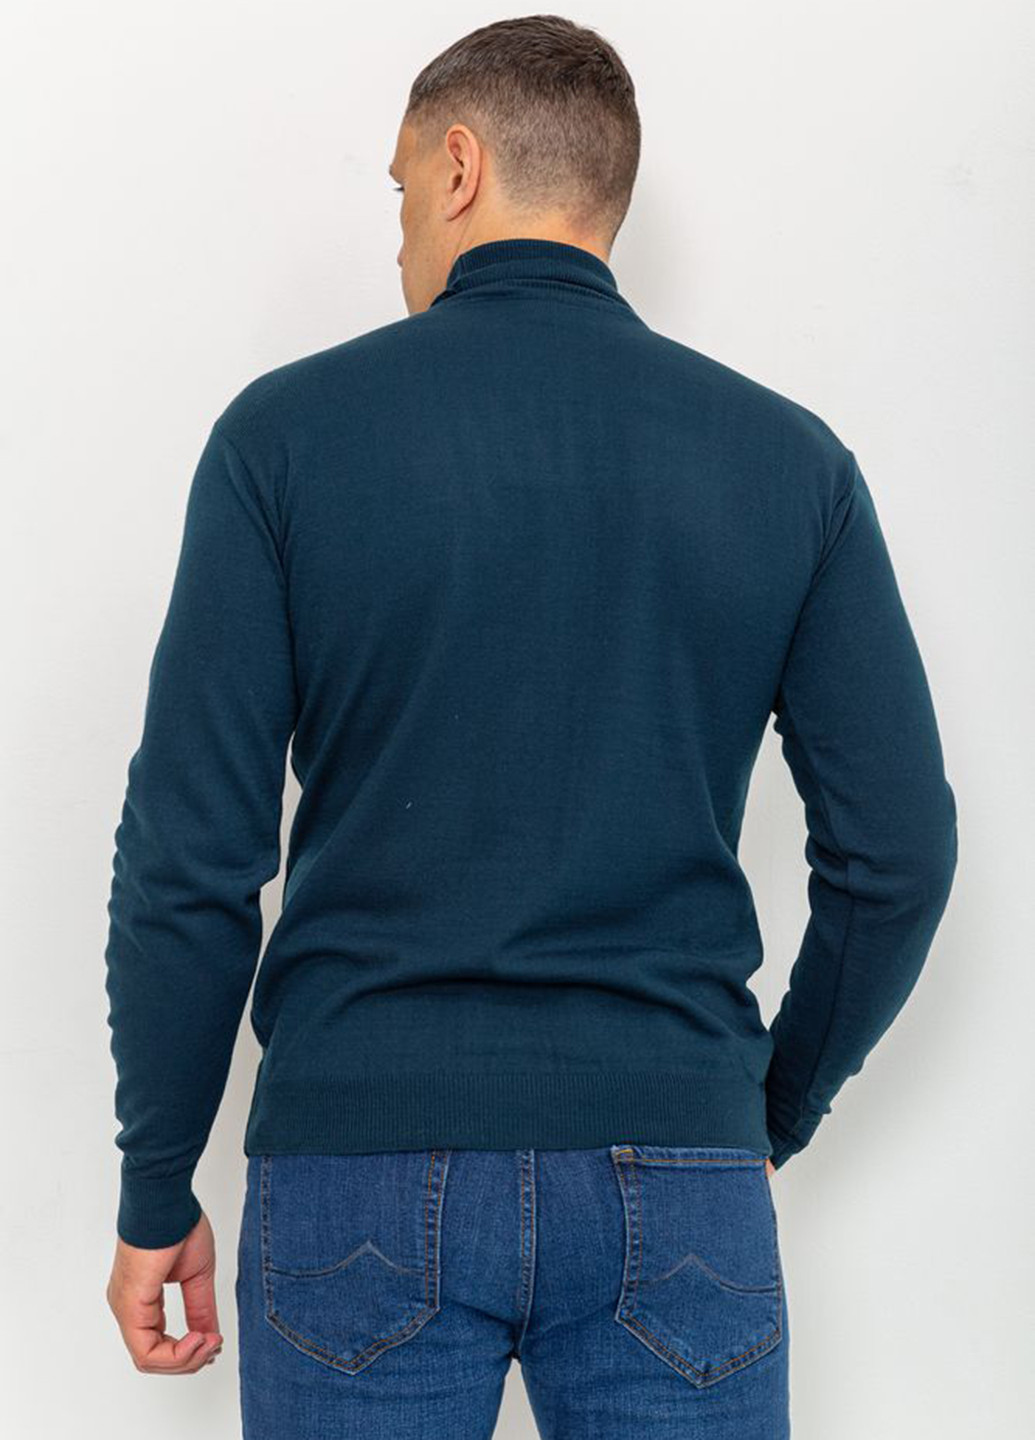 Темно-бірюзовий демісезонний светр Ager